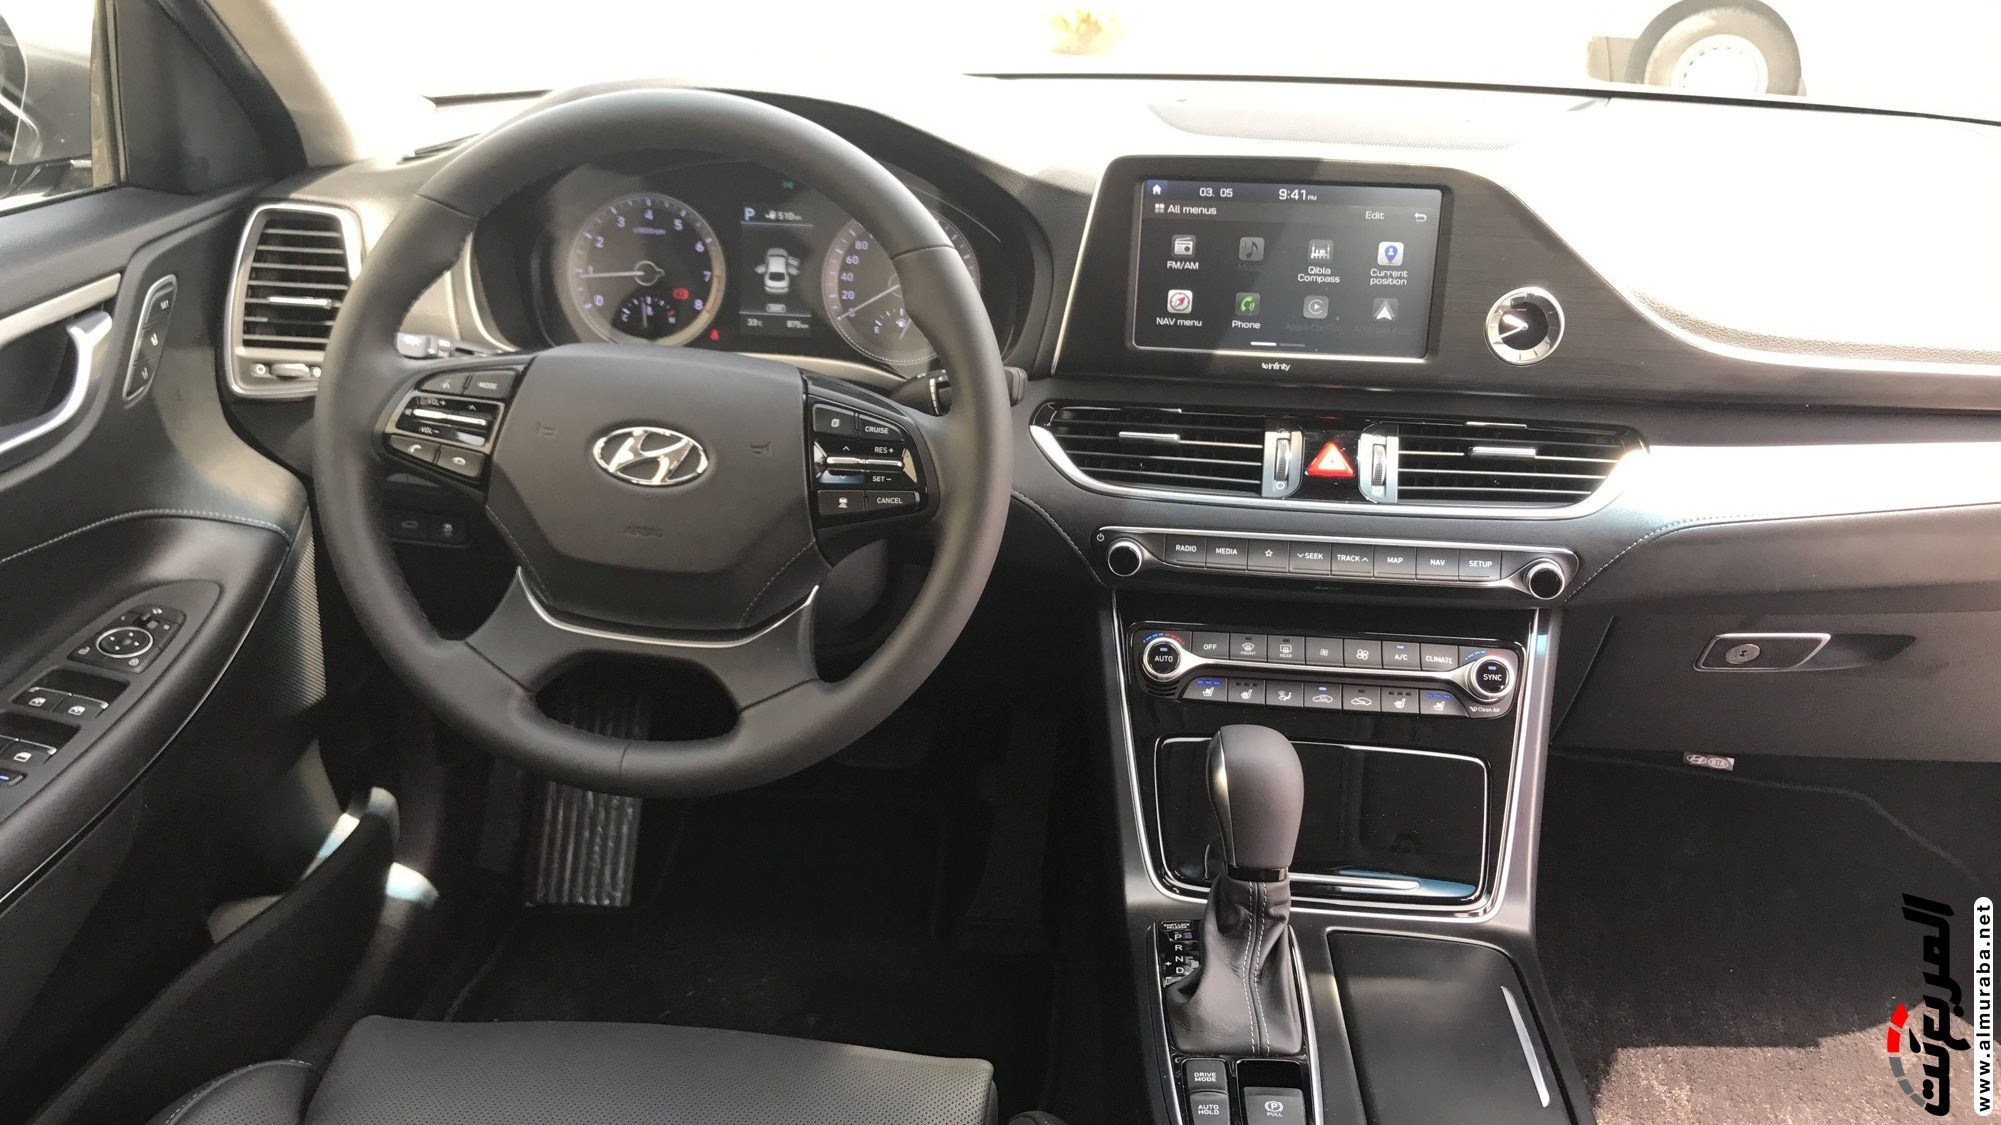 هيونداي ازيرا 2018 الشكل الجديد كلياً "تقرير وفيديو وصور ومواصفات واسعار" Hyundai Azera 3